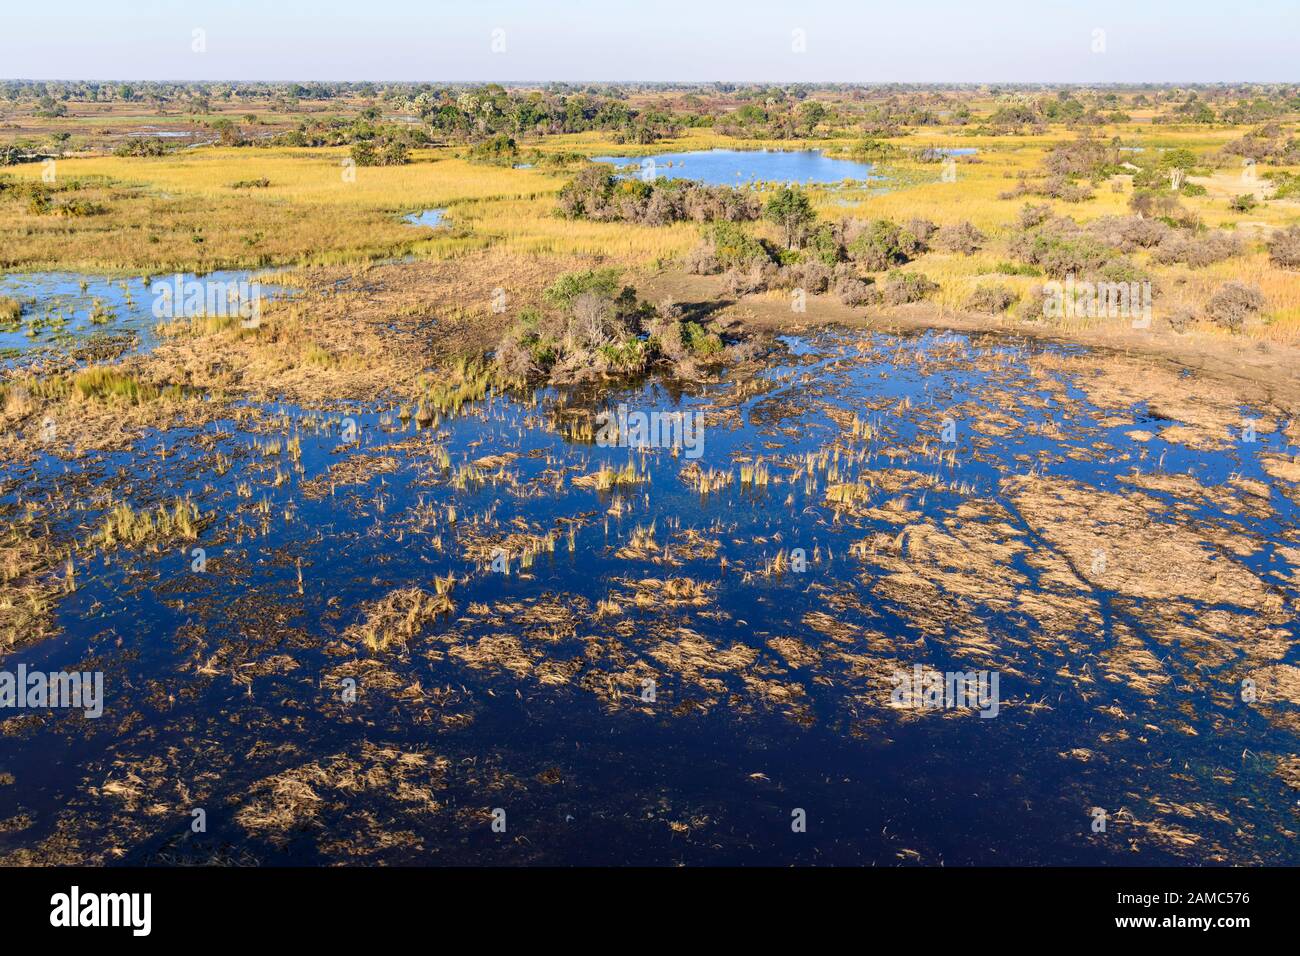 Vue aérienne du delta de l'Okavango durant l'inondation annuelle, au Botswana Banque D'Images